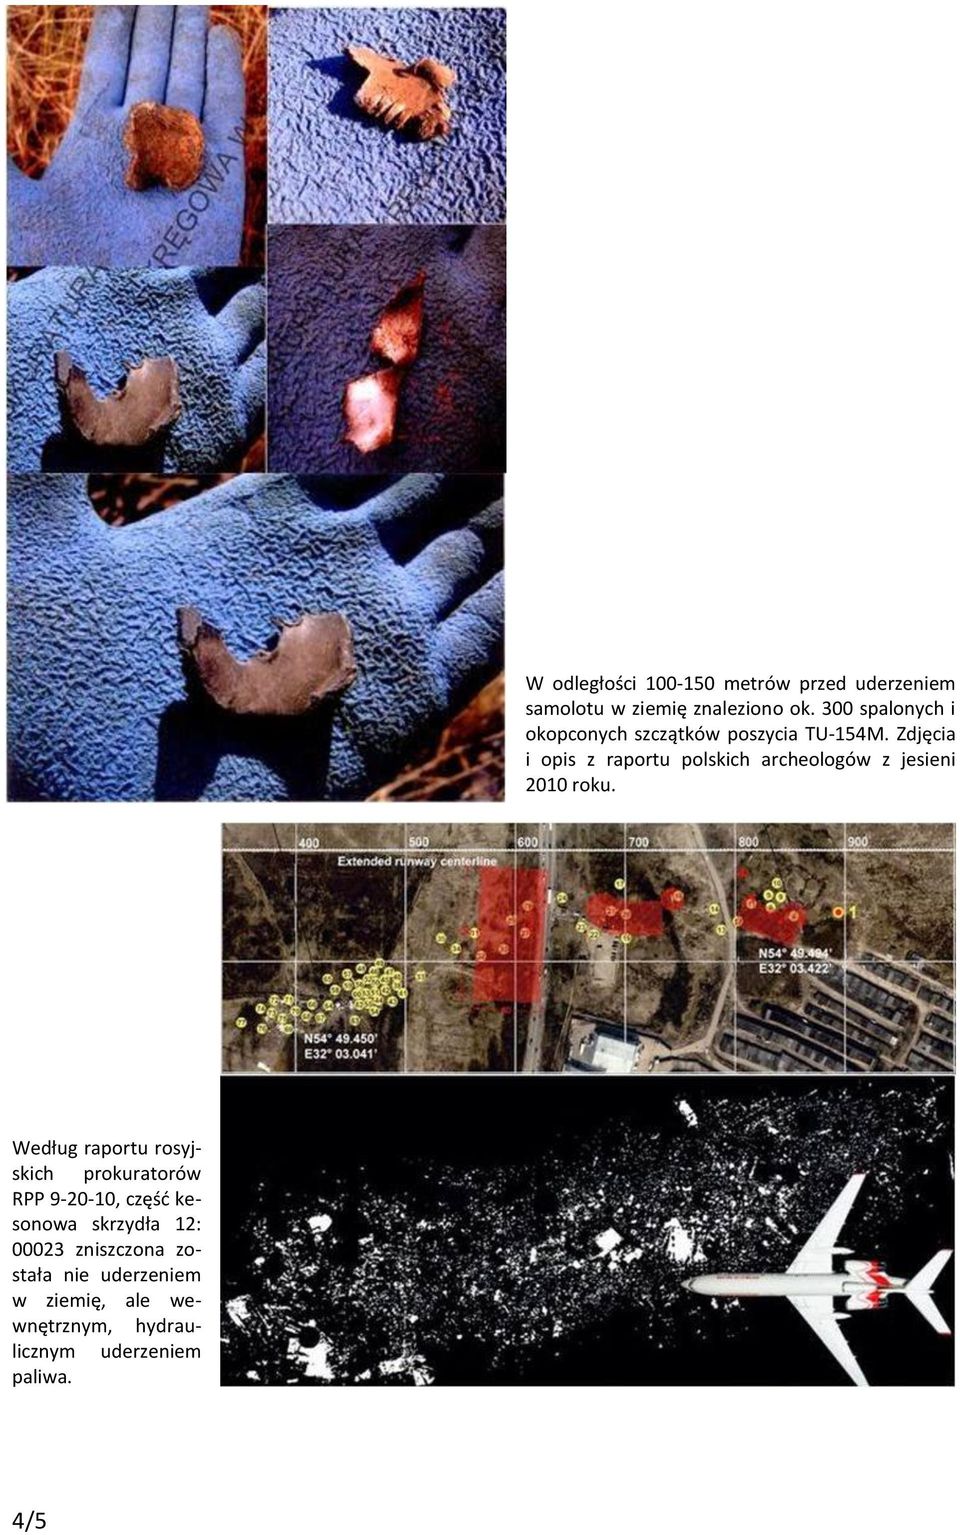 Zdjęcia i opis z raportu polskich archeologów z jesieni 2010 roku.